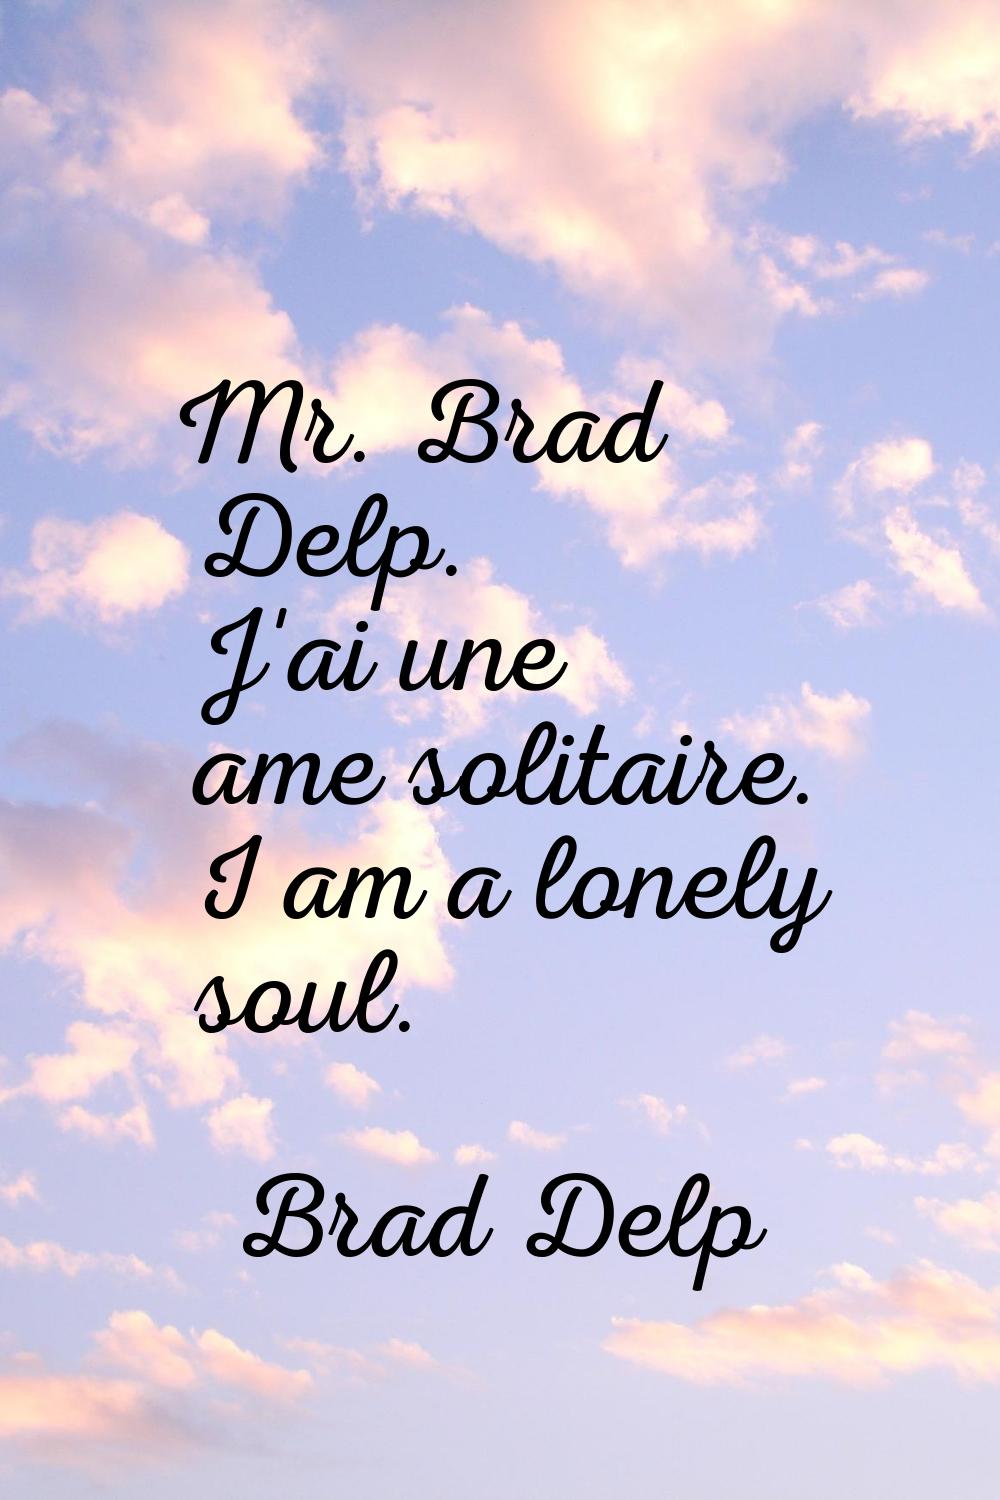 Mr. Brad Delp. J'ai une ame solitaire. I am a lonely soul.